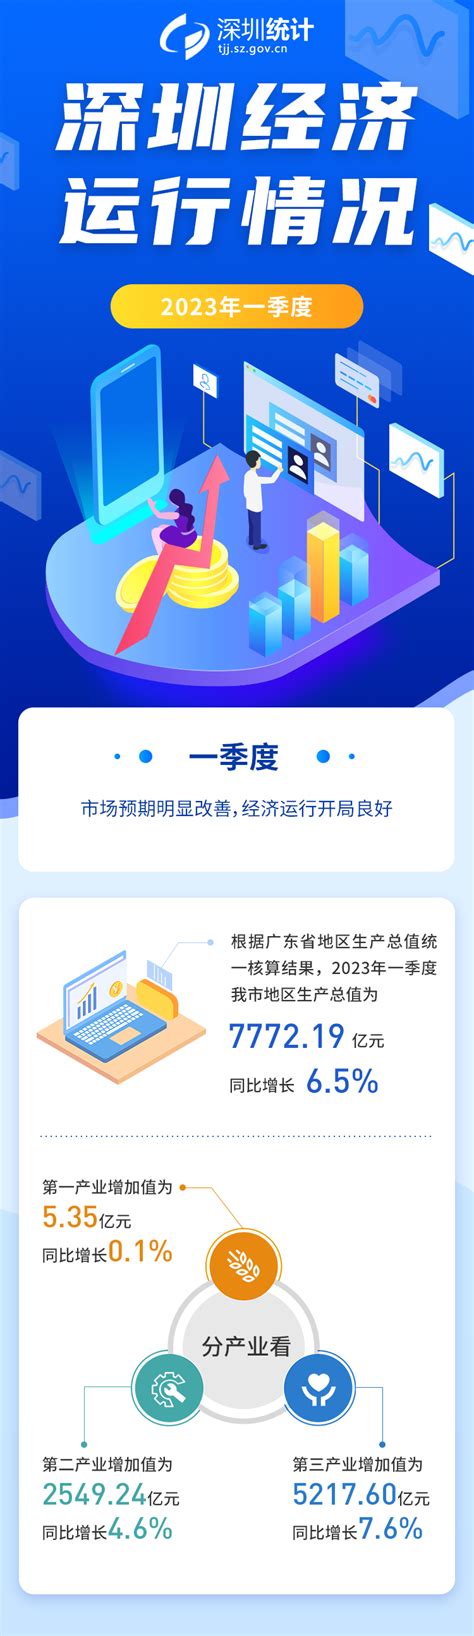 图解：2023年一季度深圳经济运行情况-数据说-深圳市统计局网站